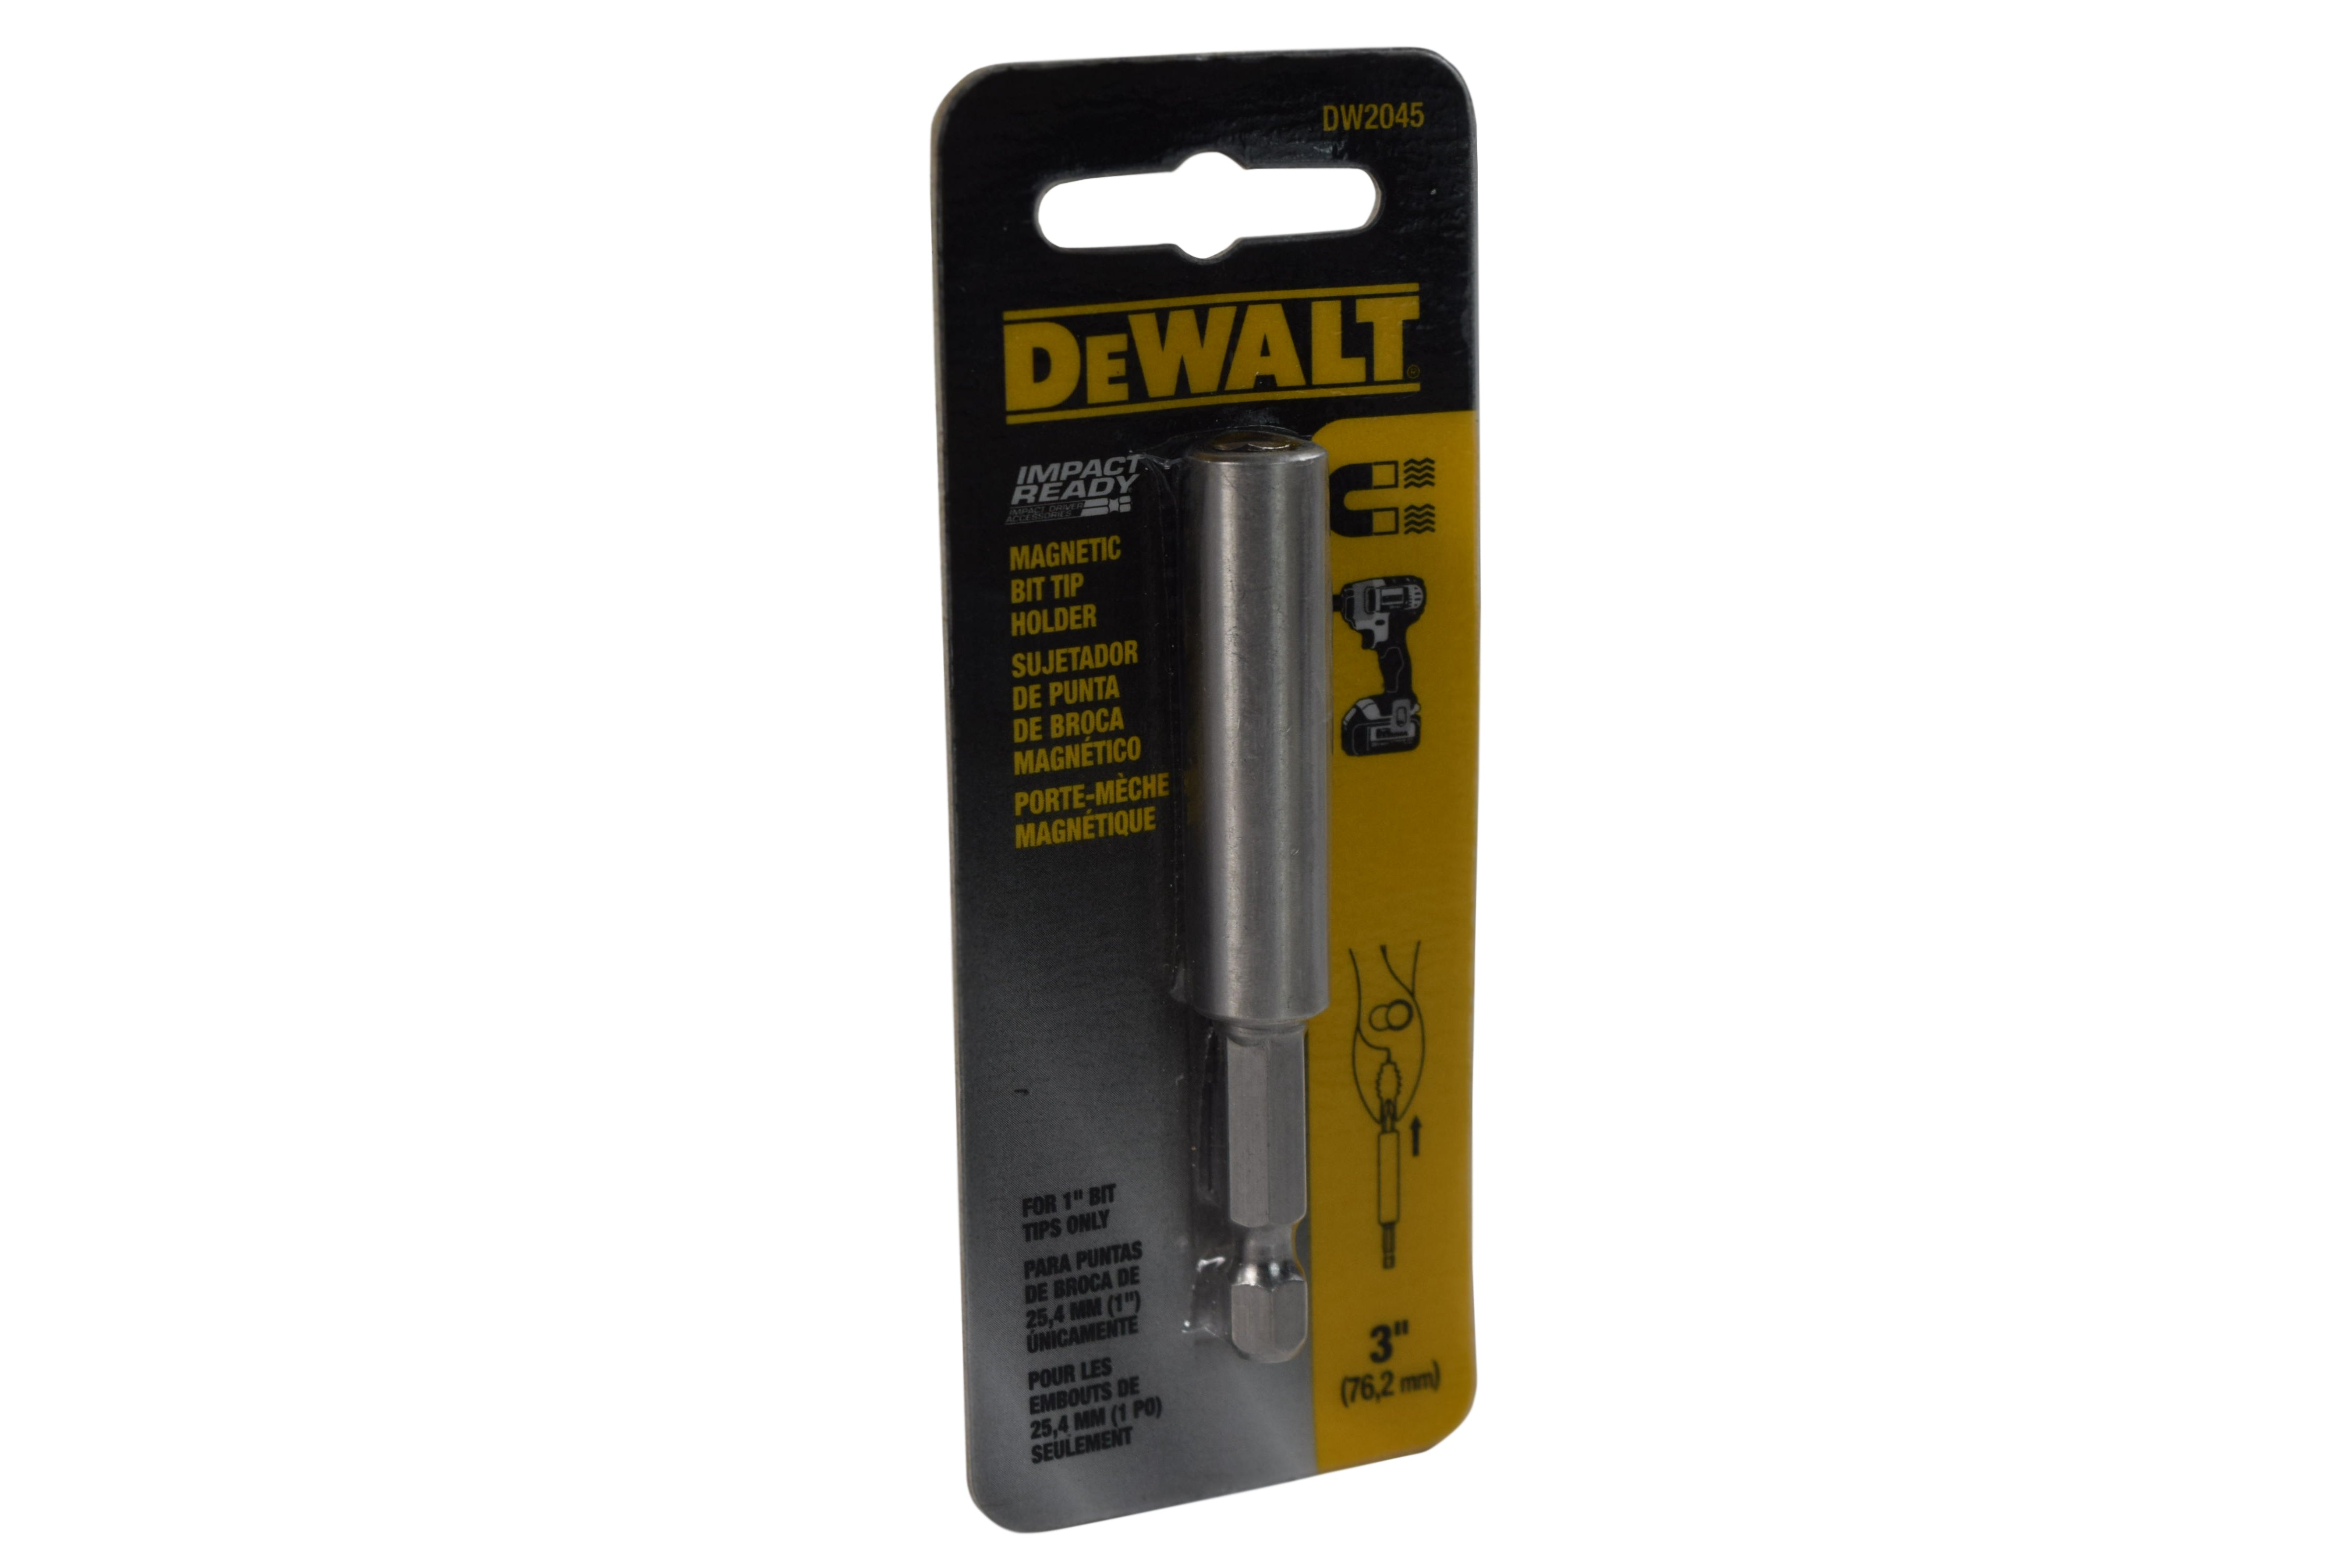 Dewalt DW2045 Metal 3-inch Screwdriving Magnetic Bit Tip Holder